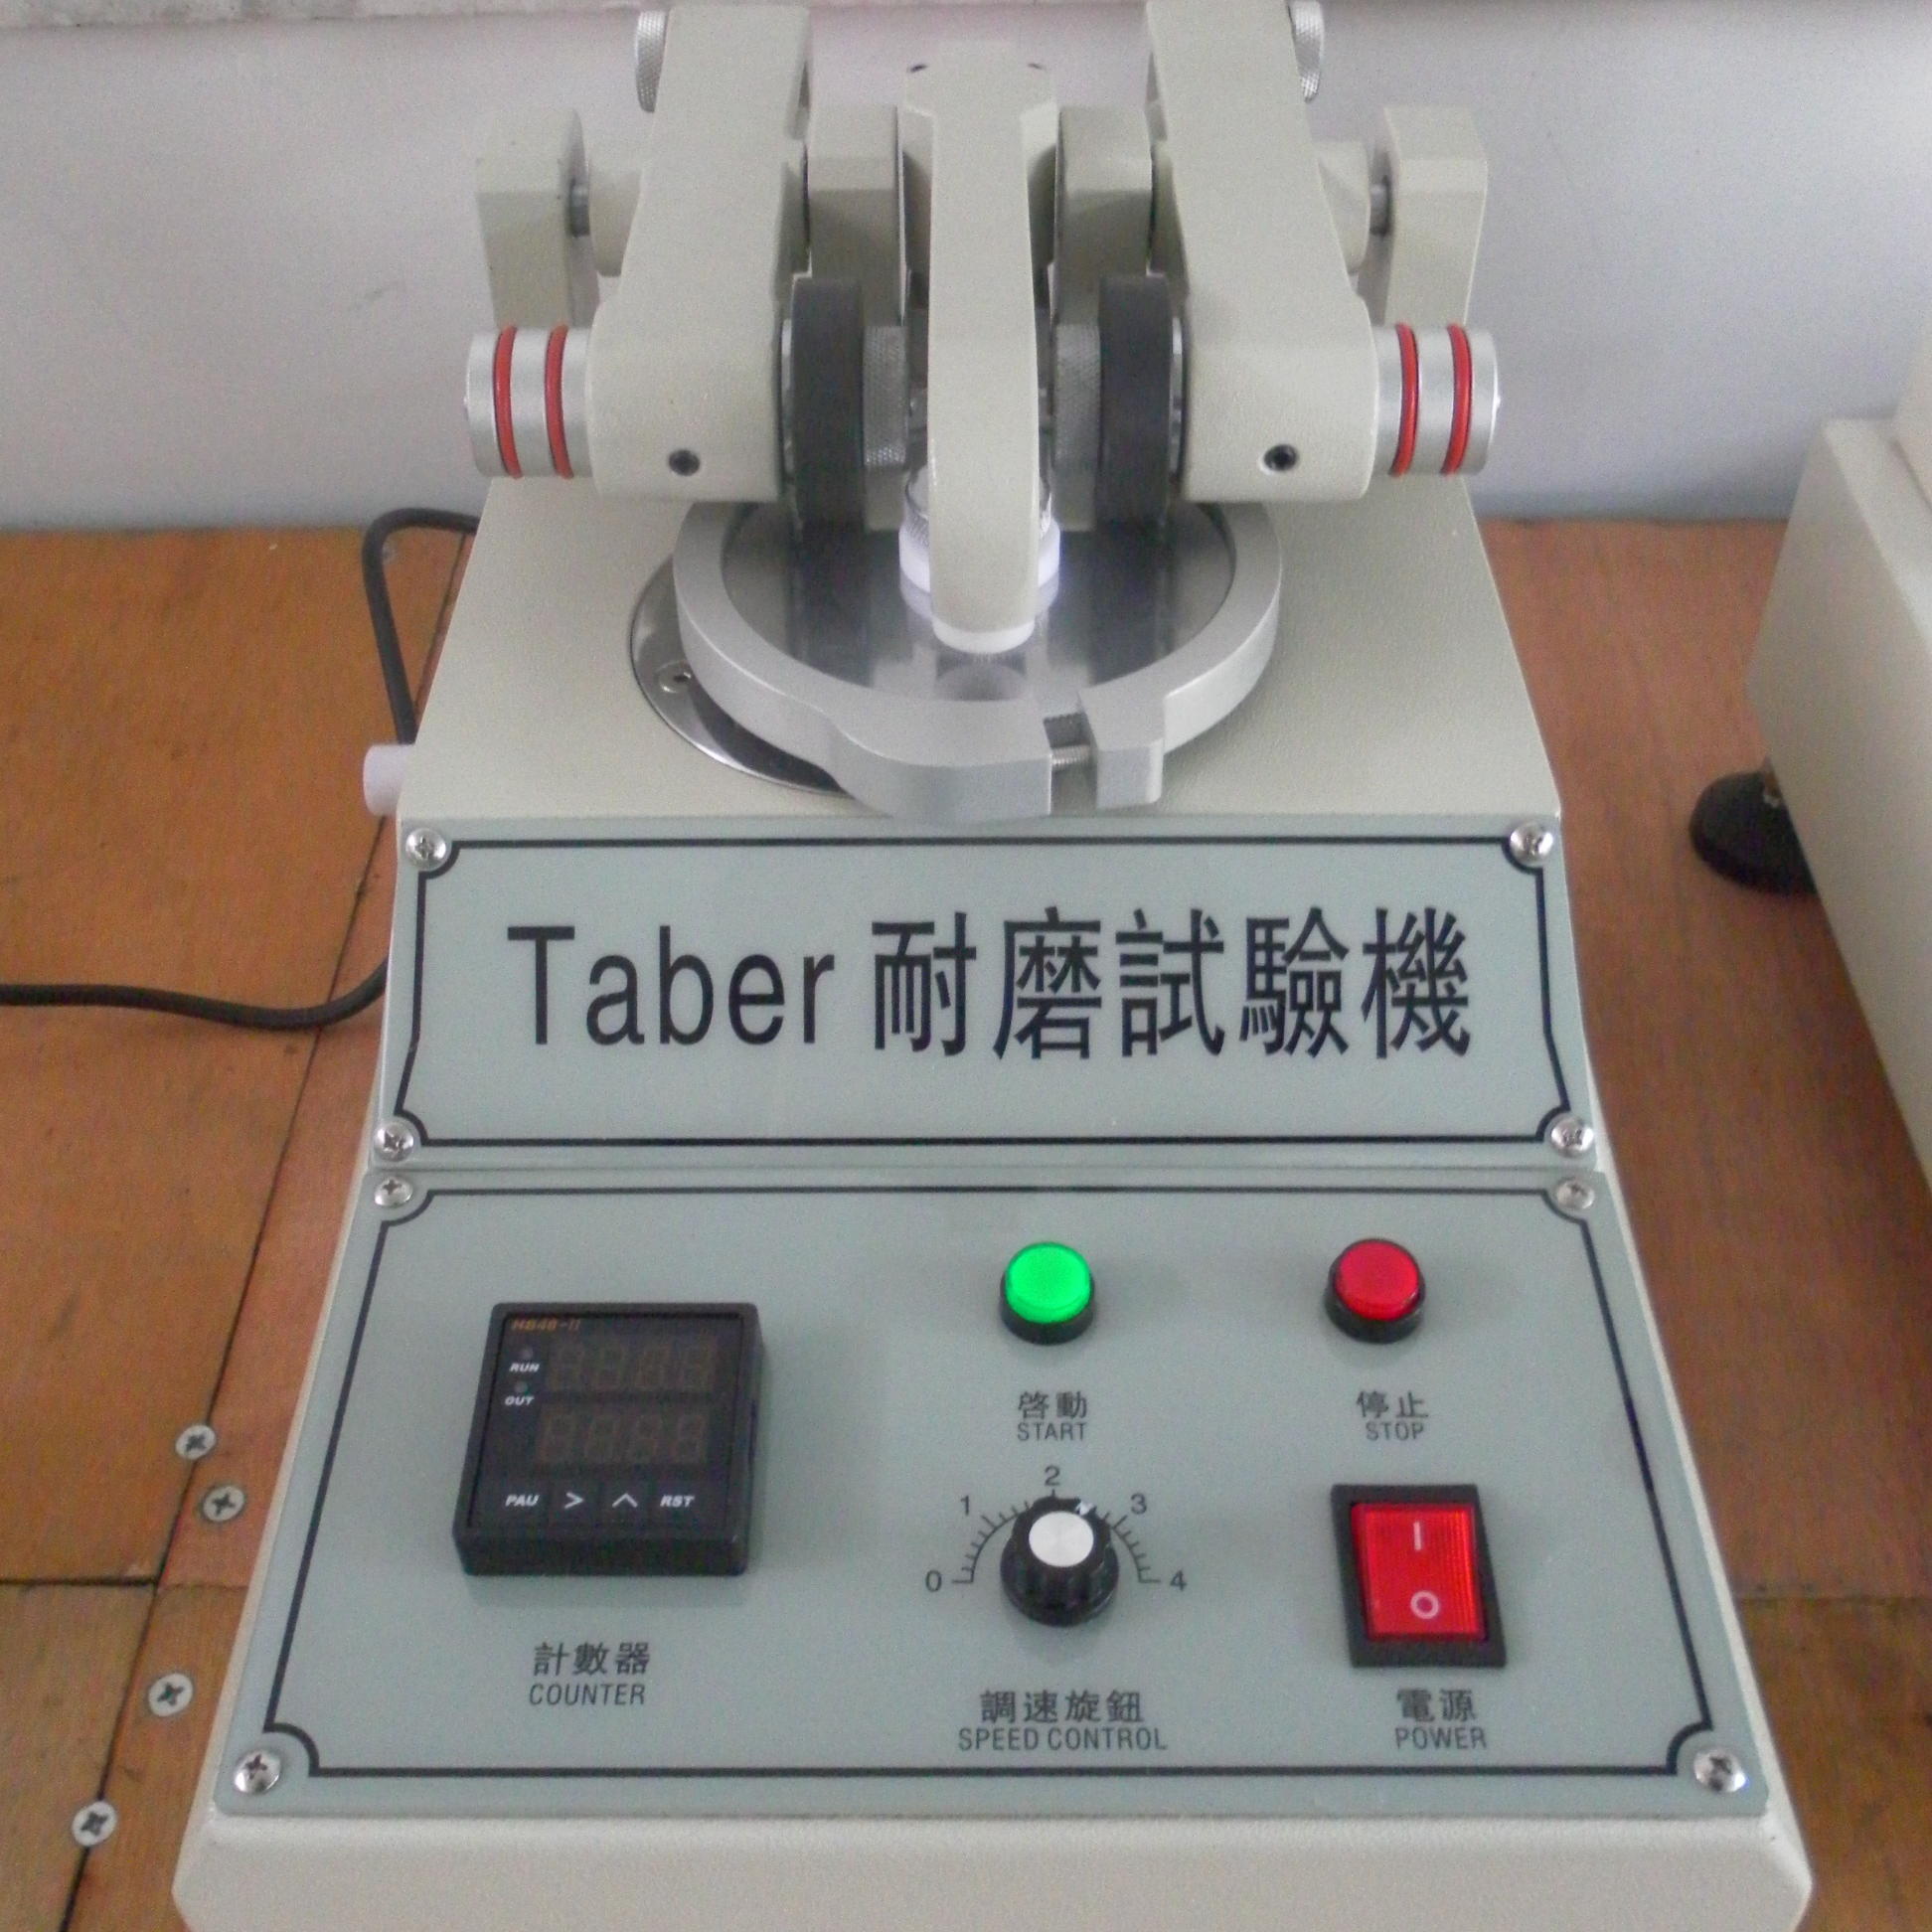 Taber Abrasion Testing Machine abrasion tester